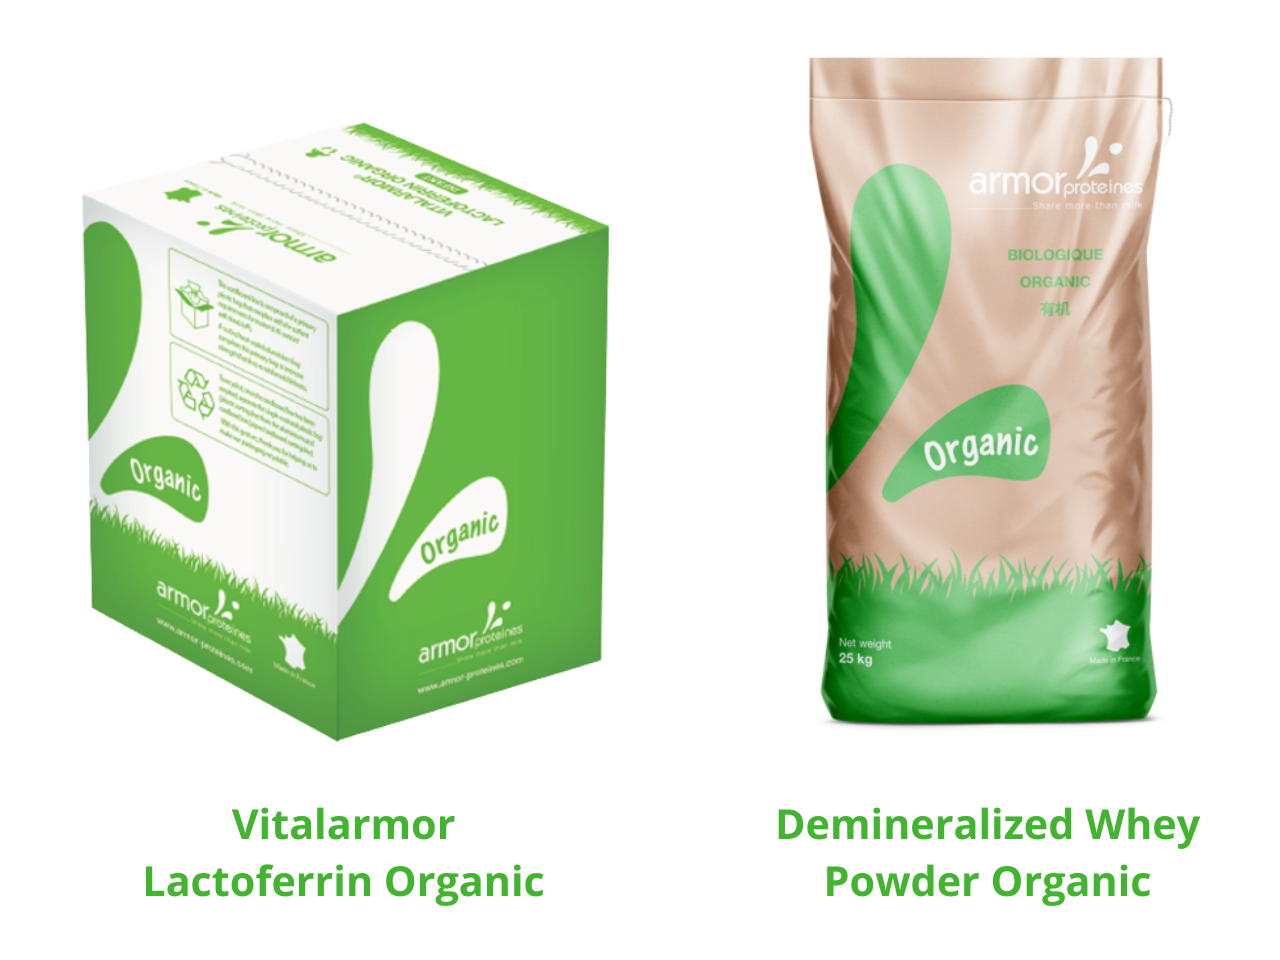 Visuel des 2 packs des nouveaux produits : Vitalarmor Lactoferrin Organic (un carton vu de dos en 3D) et Demineralized Whey Powder Organic (un sac de 25 kg vu de face)